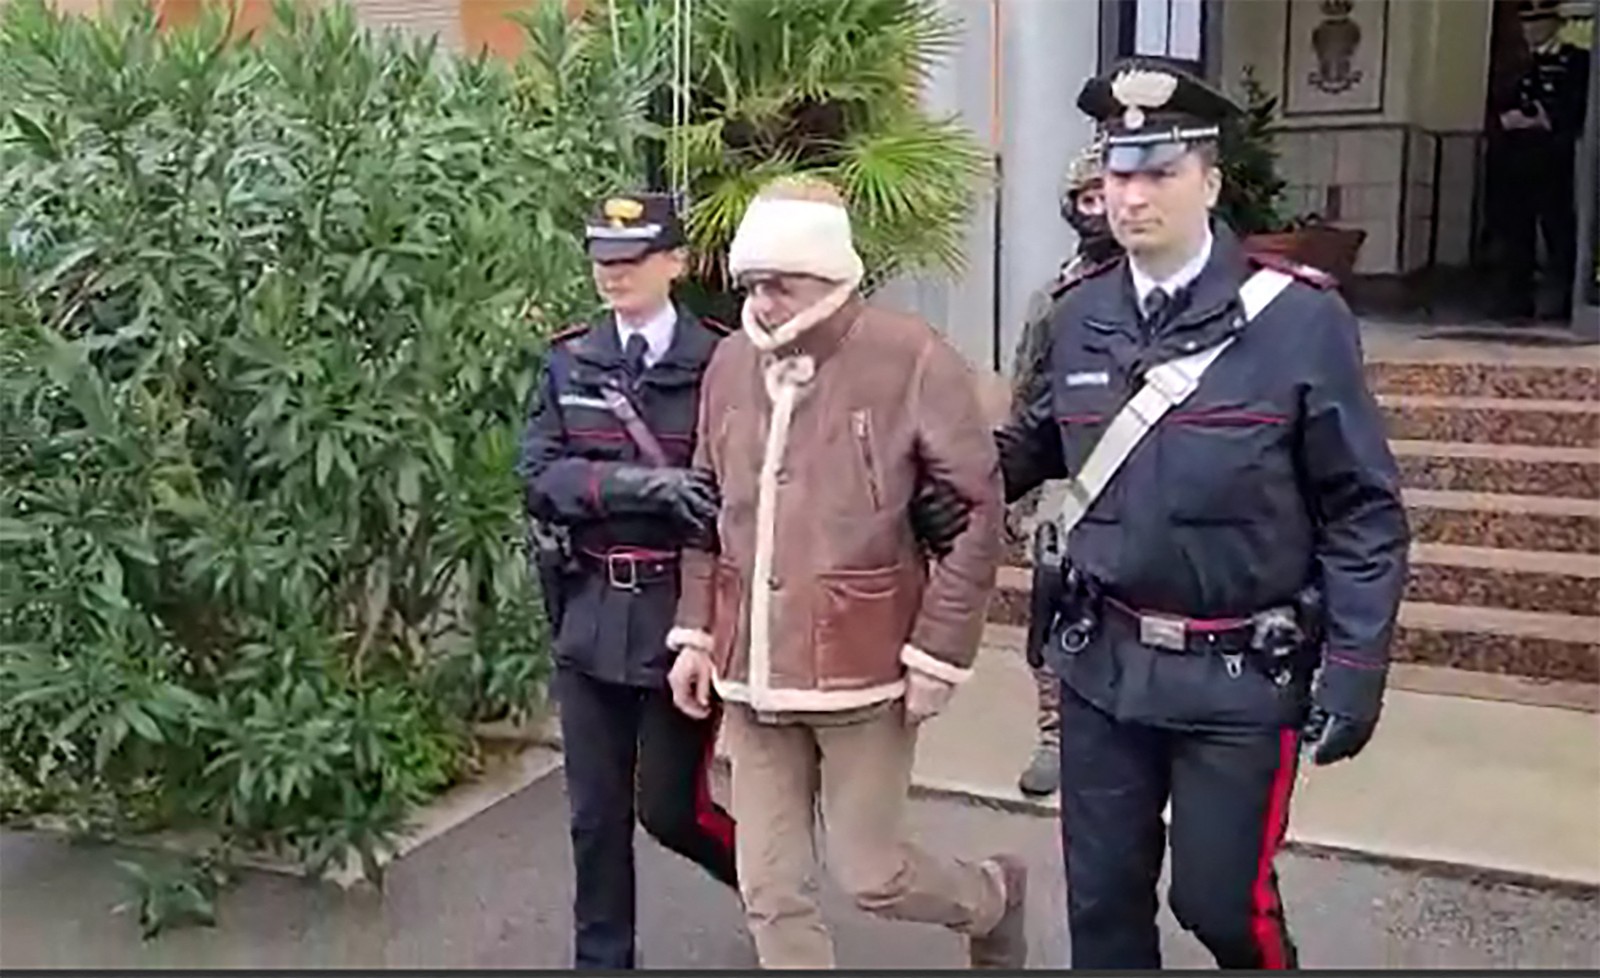 Mafioso mais procurado da Itália, Matteo Messina Denaro foi preso na Sicília em 16 de janeiro de 2023 após 30 anos fugitivo — Foto: Carabinieri via AFP